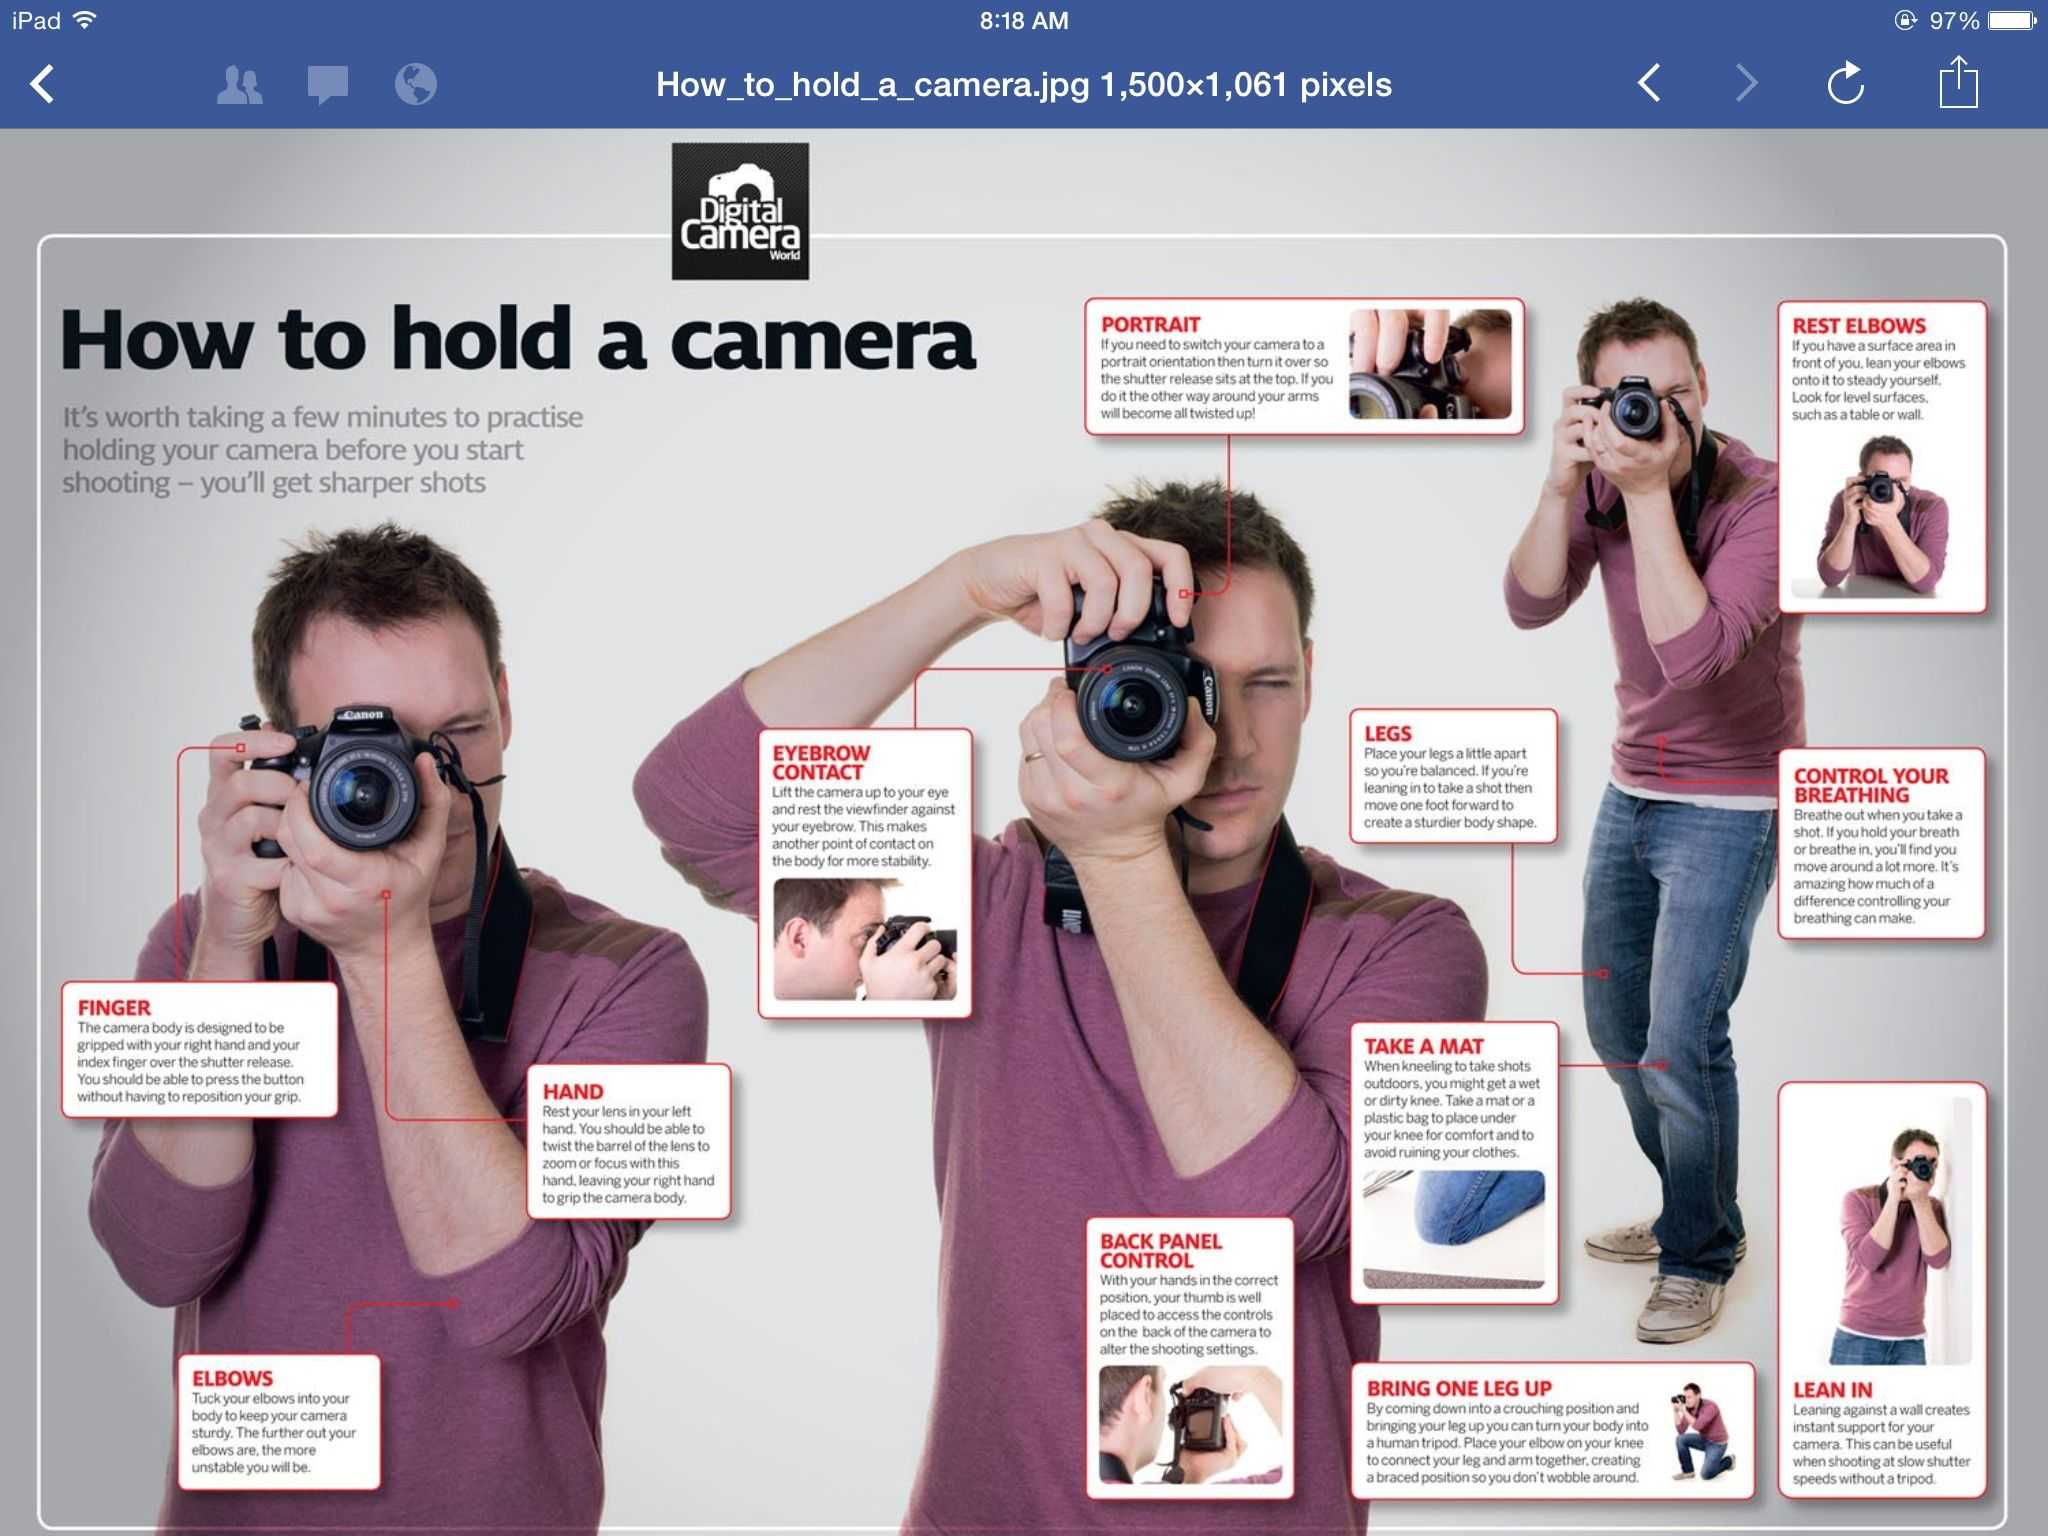 Как научиться фотографировать на телефон? 15 профессиональных секретов как фотографировать на телефон + 5 советов по обработке кадров - courseburg